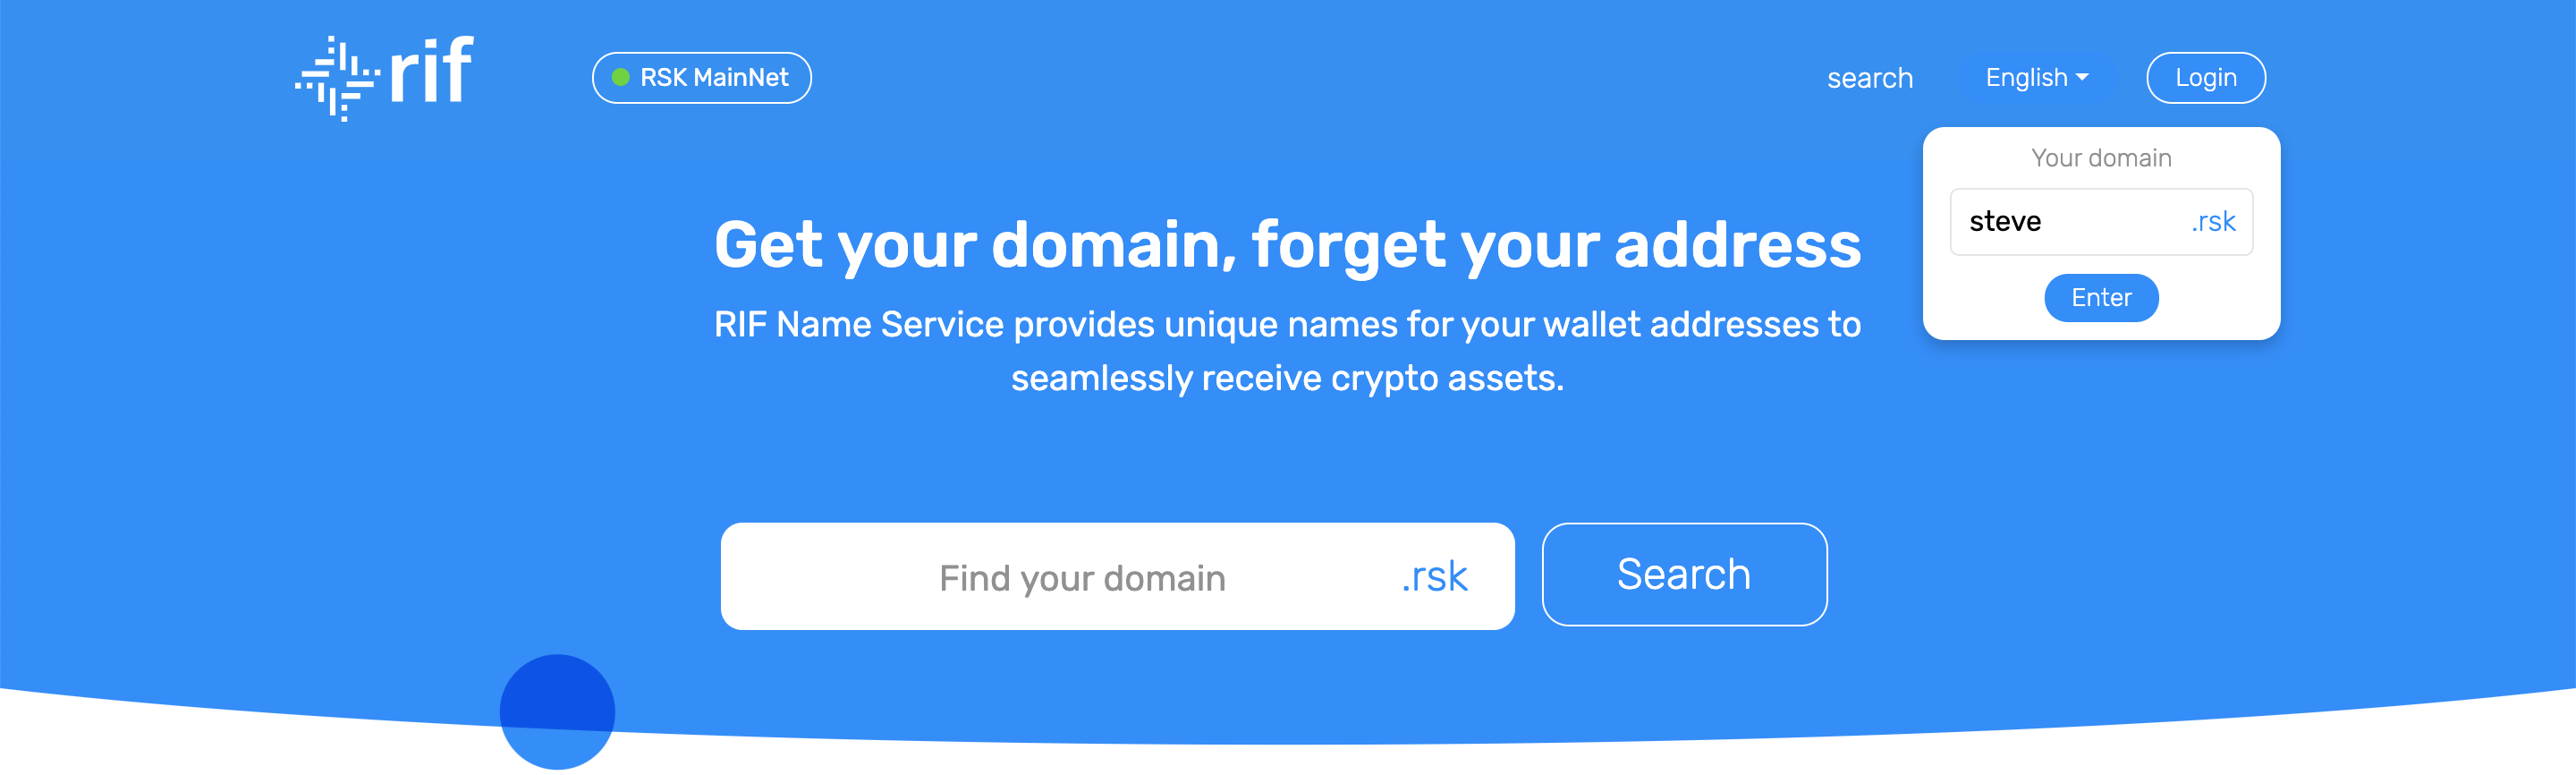 UserGuide - Click Enter Domain